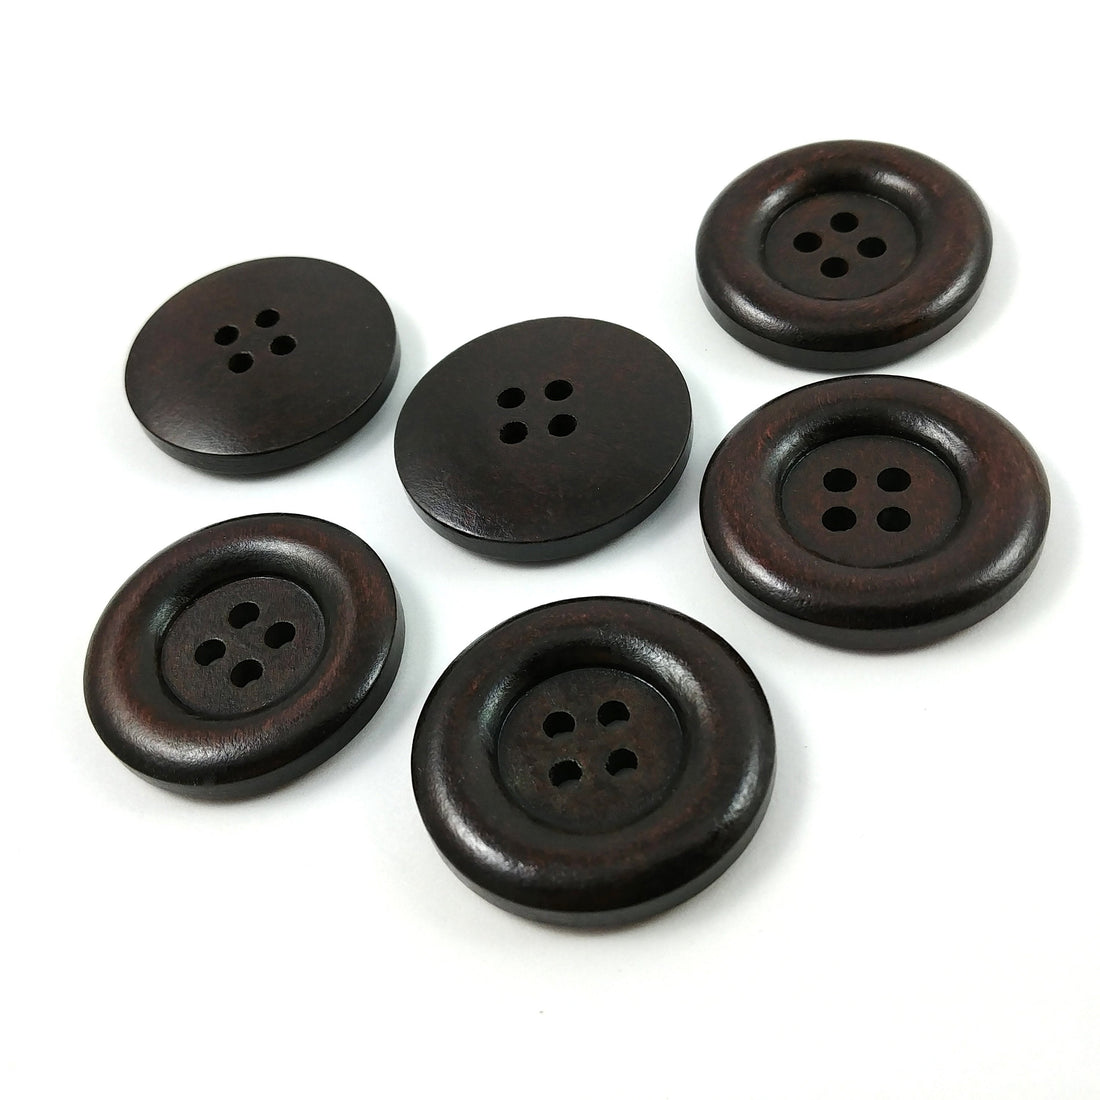 Bouton de bois brun foncé de 3cm - ensemble de 6 boutons en bois naturel